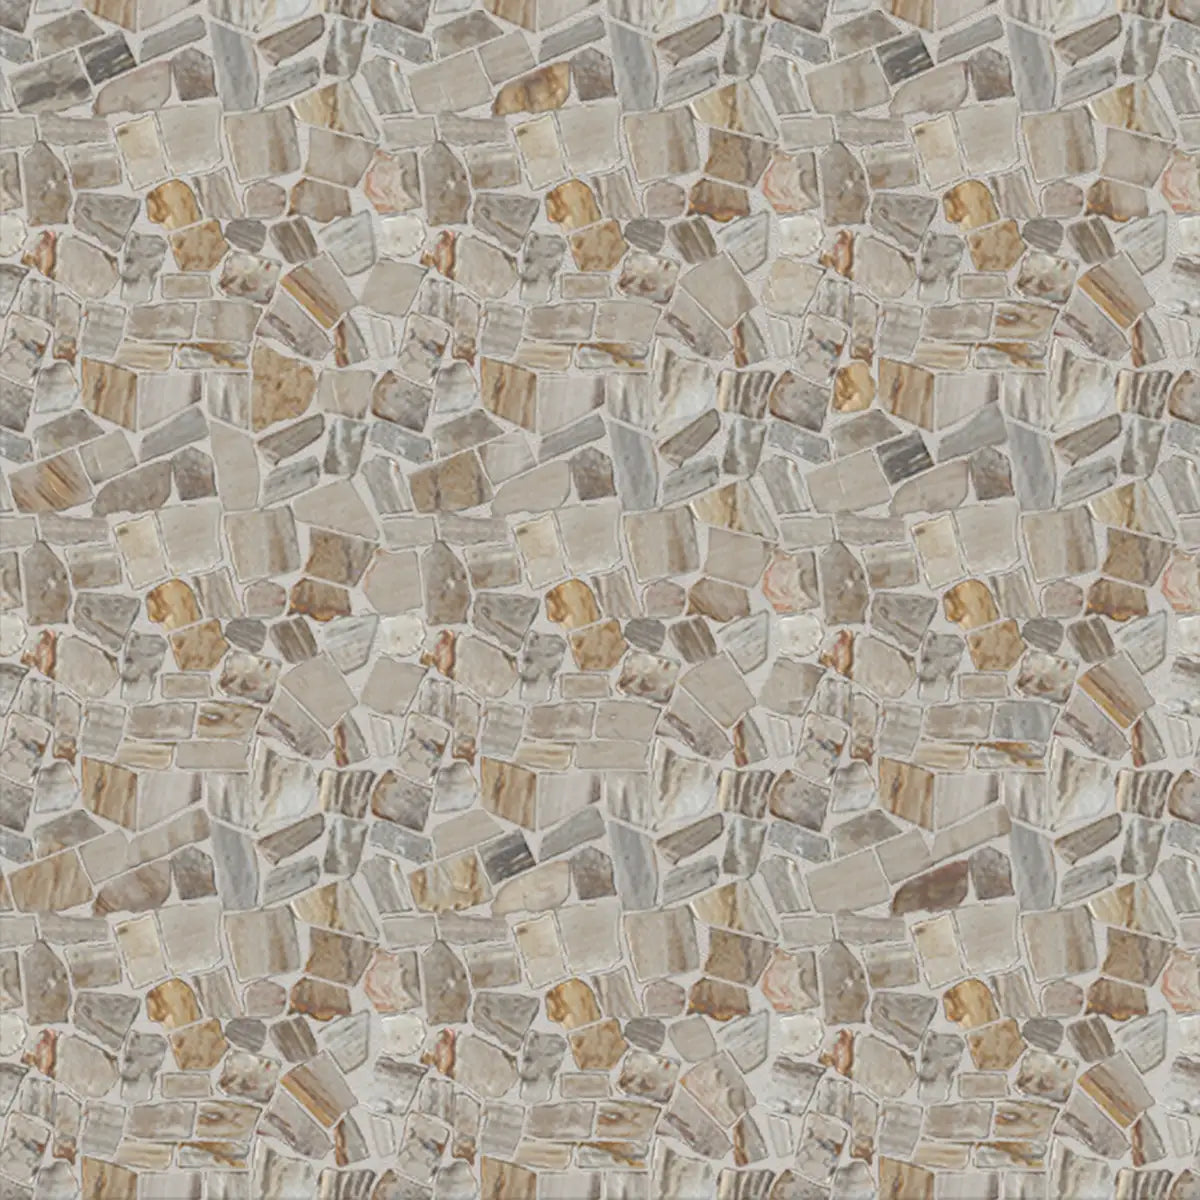 Mosaic Pebble Floor Tiles, Petrified Wood Mosaic Wall Tiles